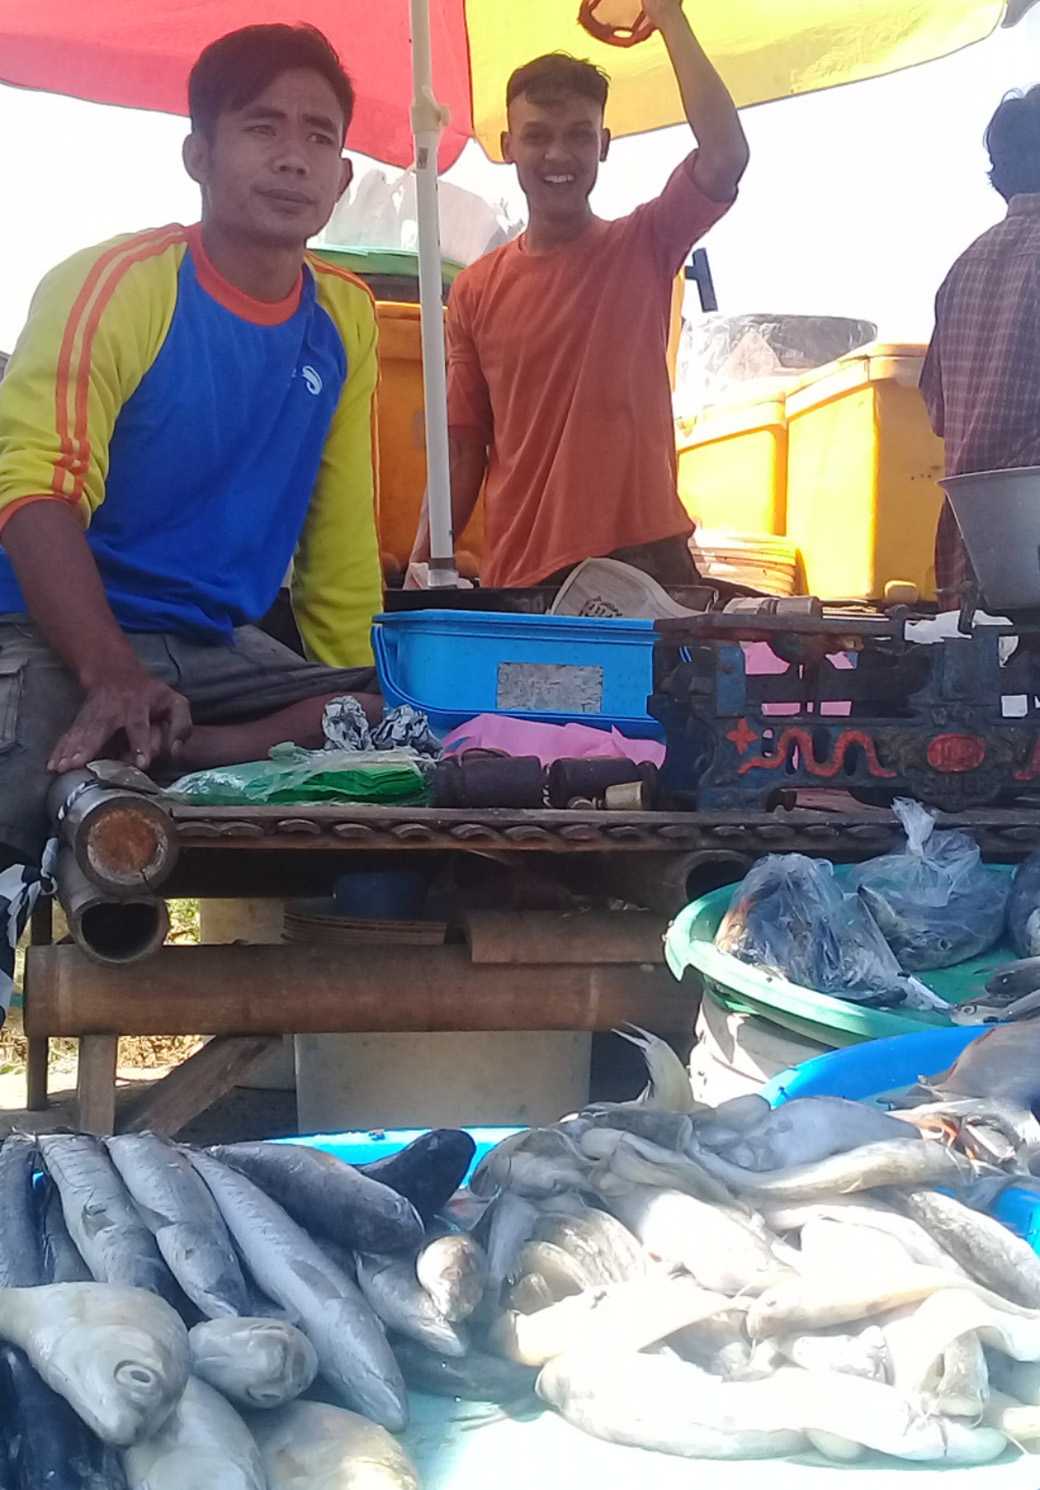 MENUNGGU PEMBELI: Seorang penjual ikan air tawar di Pasar Desa Karangpucung, Kecamatan Karangpucung, Kabupaten Cilacap menunggu pembeli, baru-baru ini. (SB/Akbar Teha)